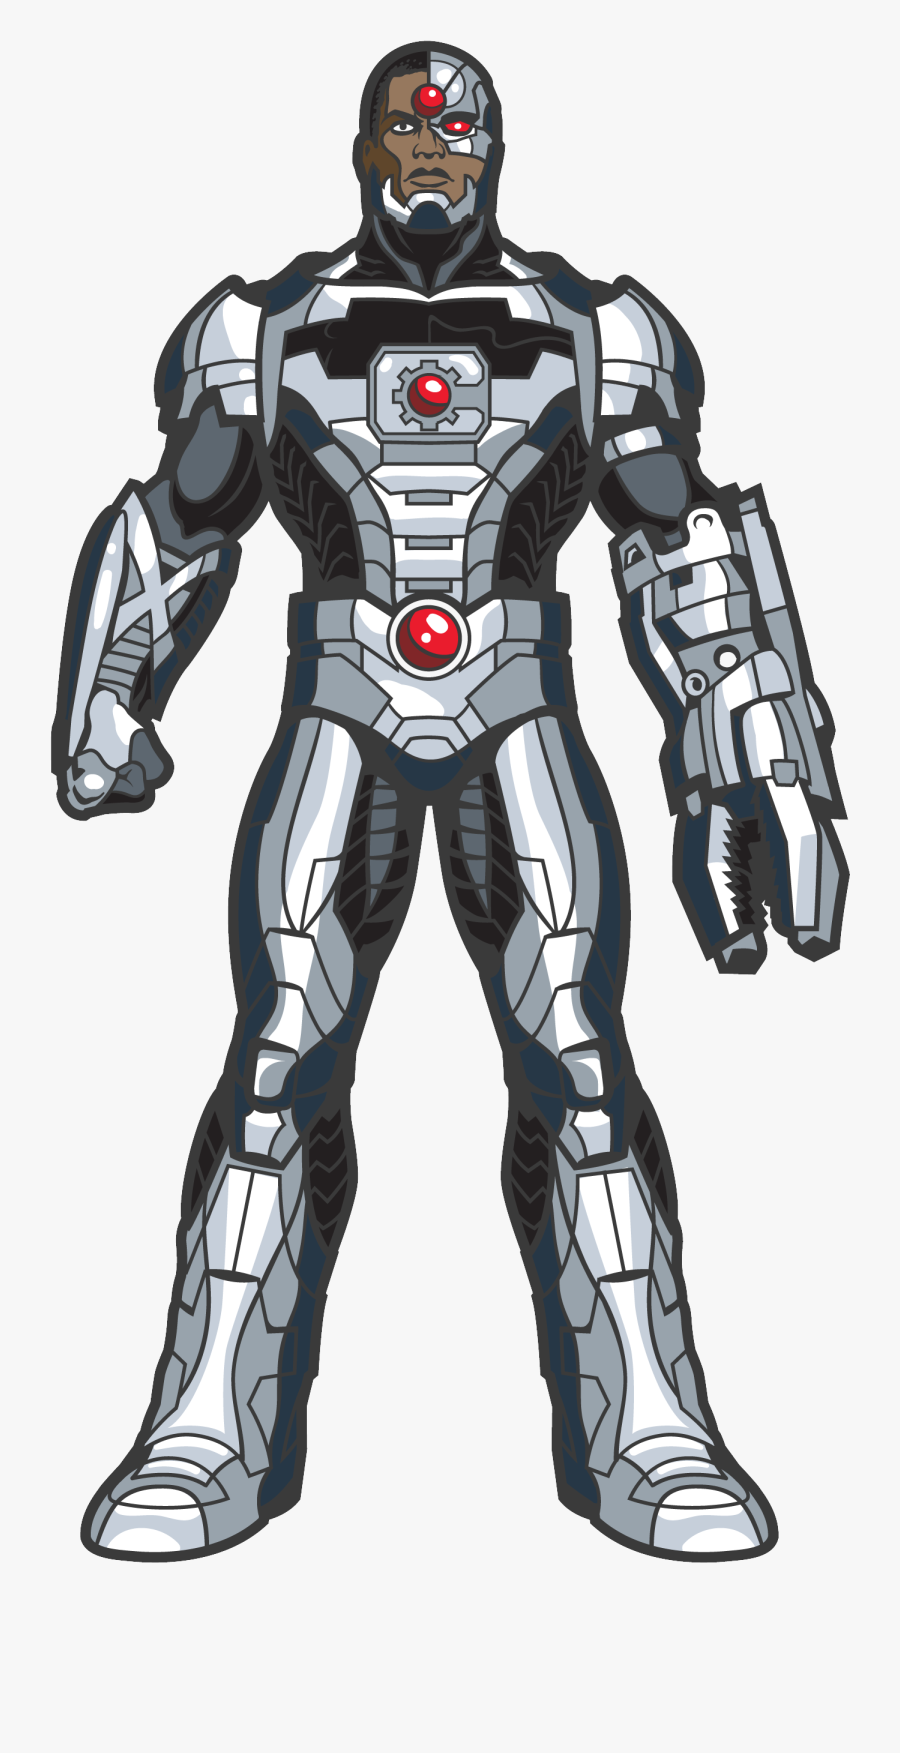 Cyborg Png Transparent Background - Justice League Comic Cyborg, Transparent Clipart